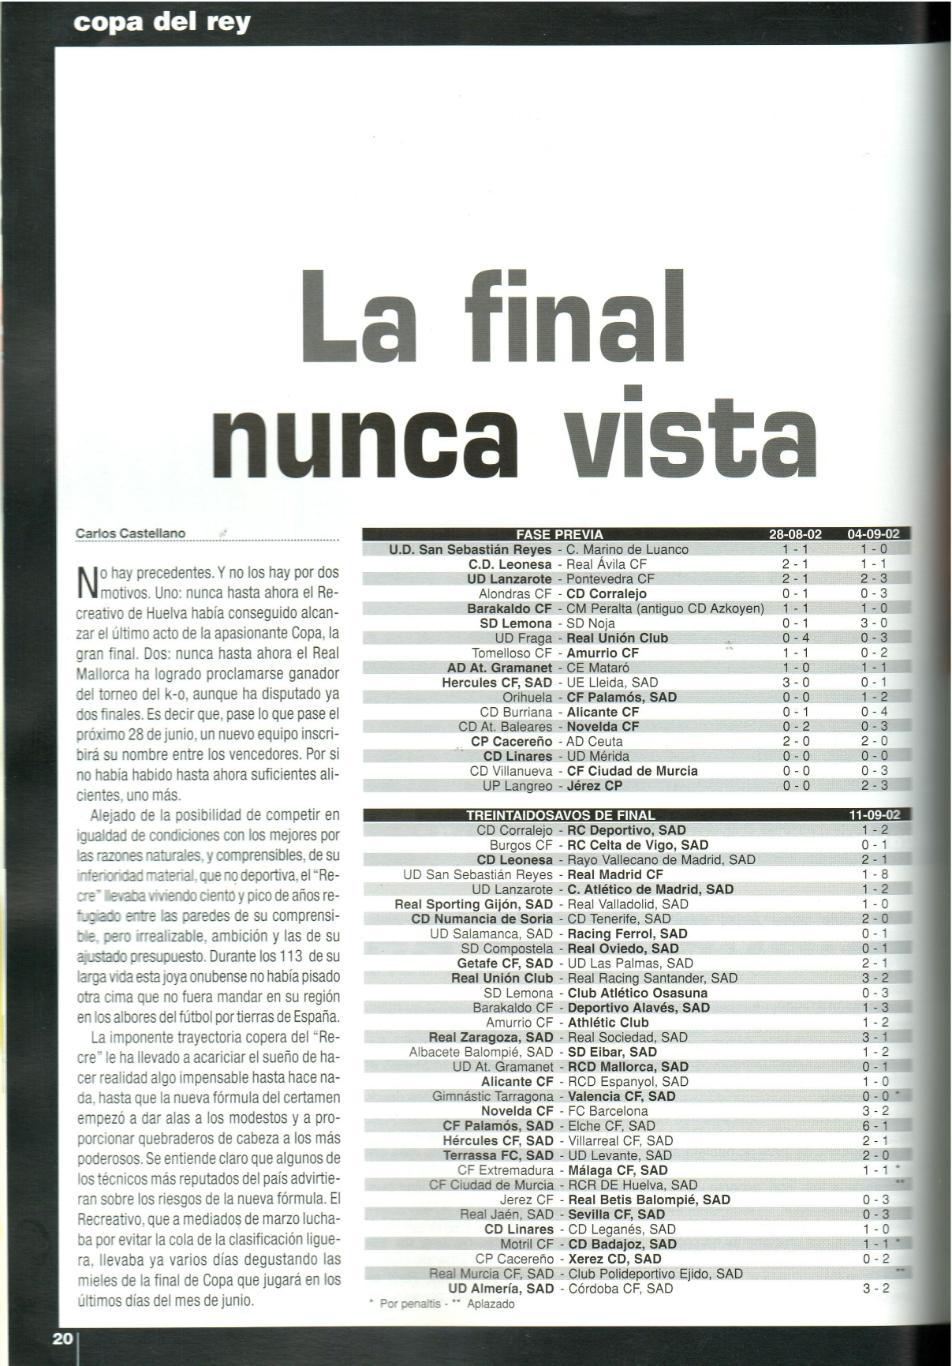 Официальный журнал Королевской Федерации футбола Испании RFEF 2003 Март 2